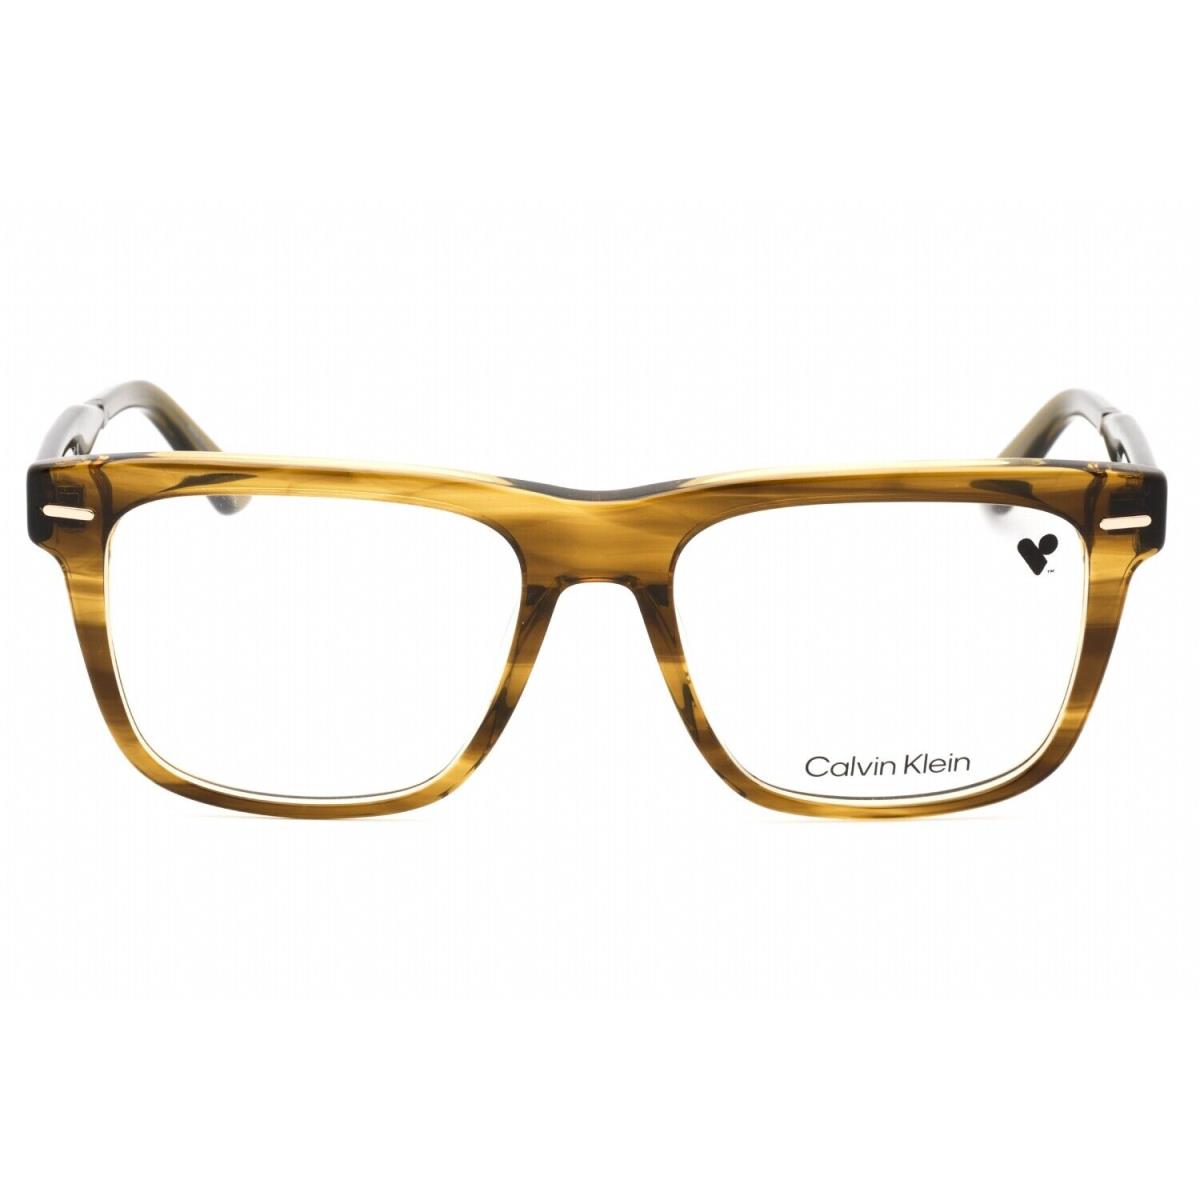 Calvin Klein CK22538 317 Eyeglasses Green Frame 55mm